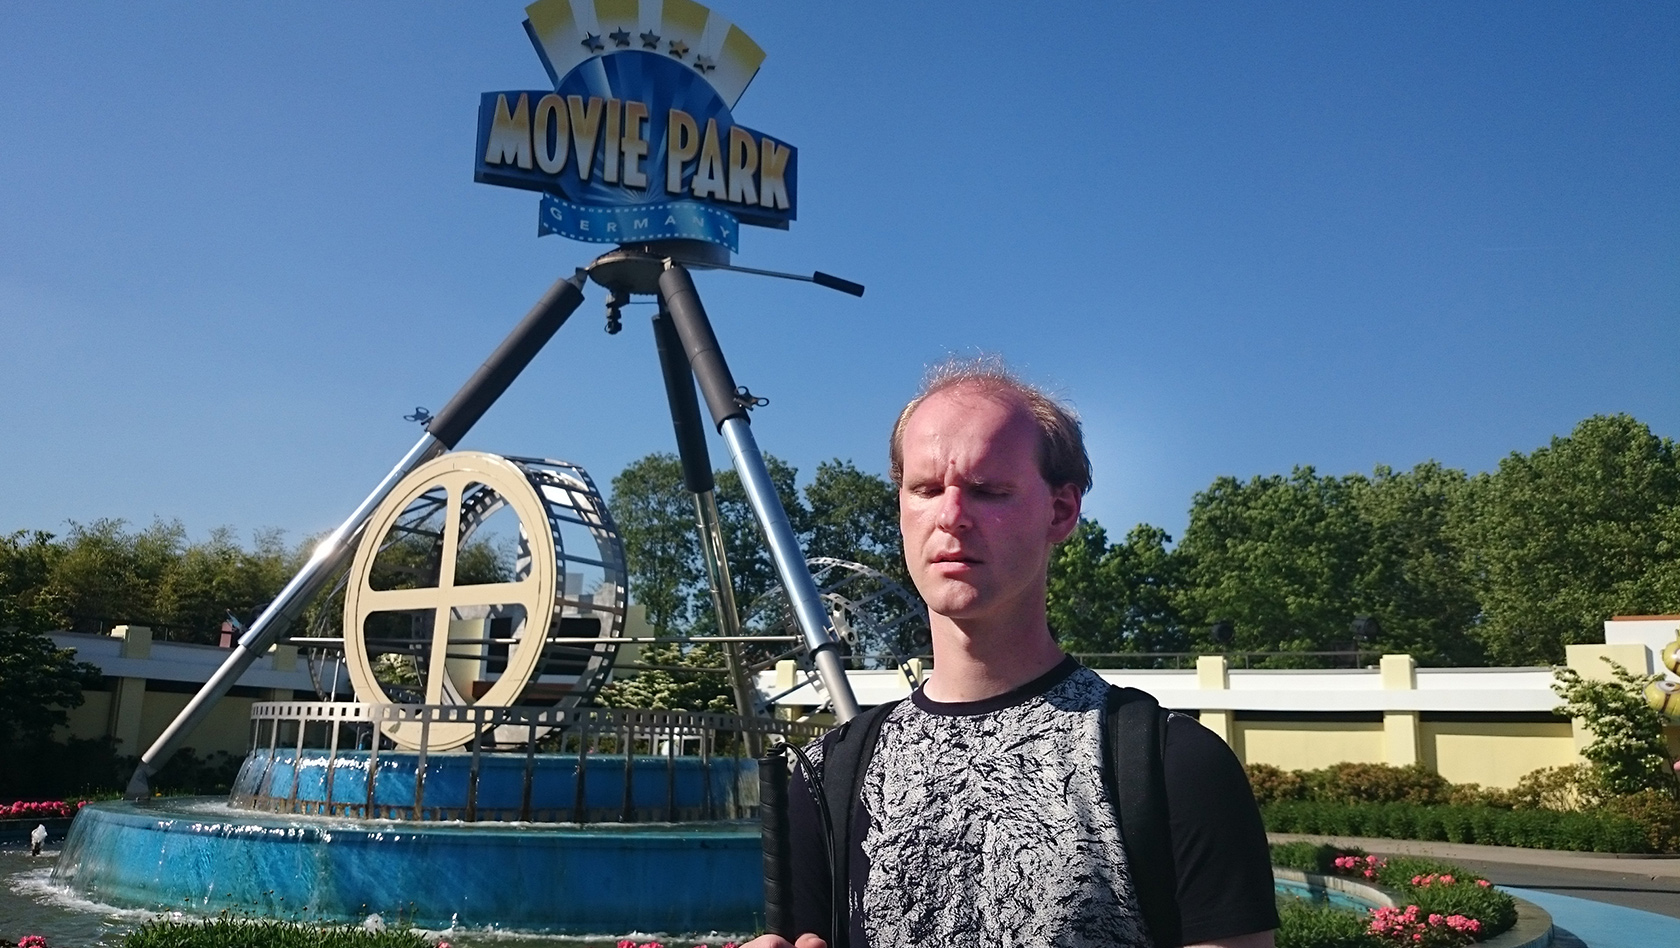 Movie Park Germany als Blinder besuchen - Christian Ohrens testet